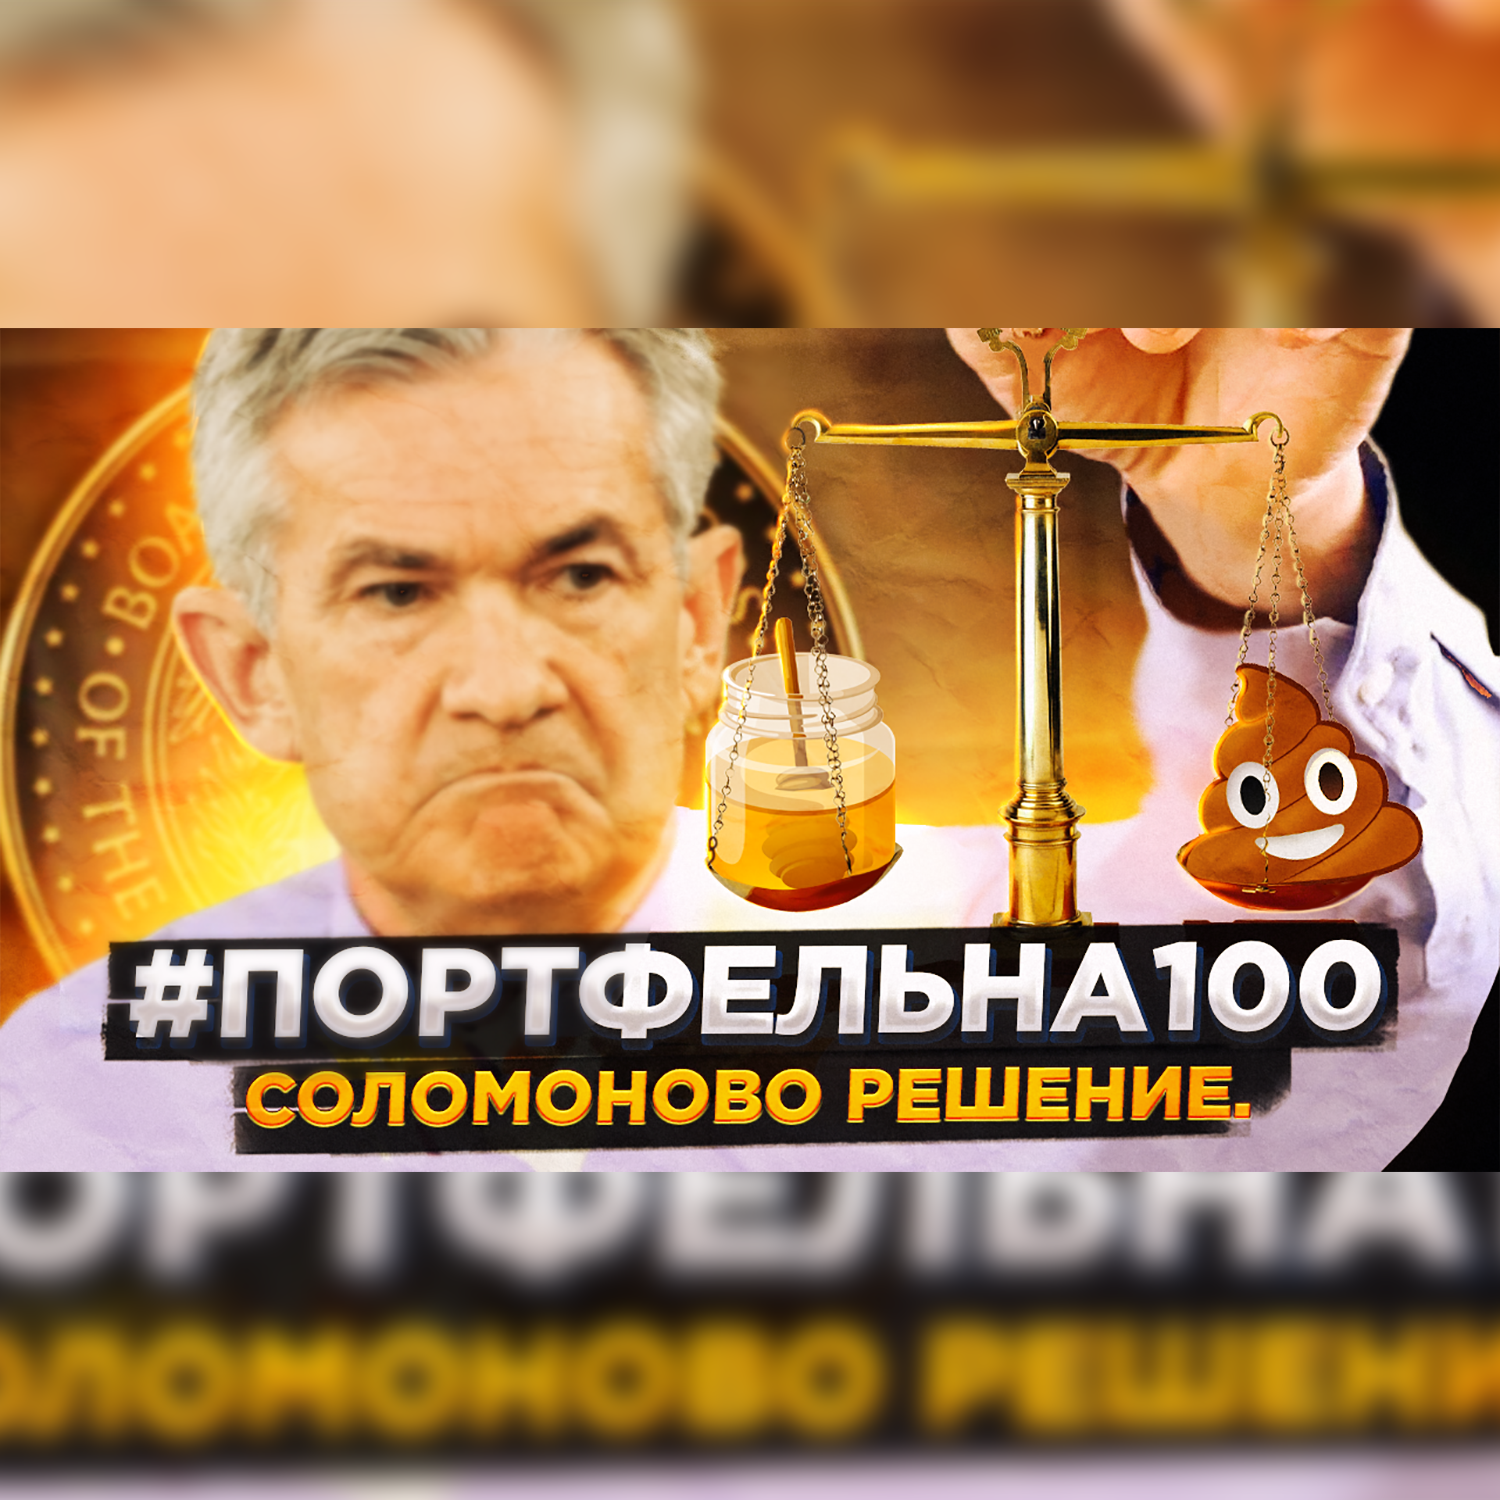 Соломоново решение #Портфельна100 podcast poster